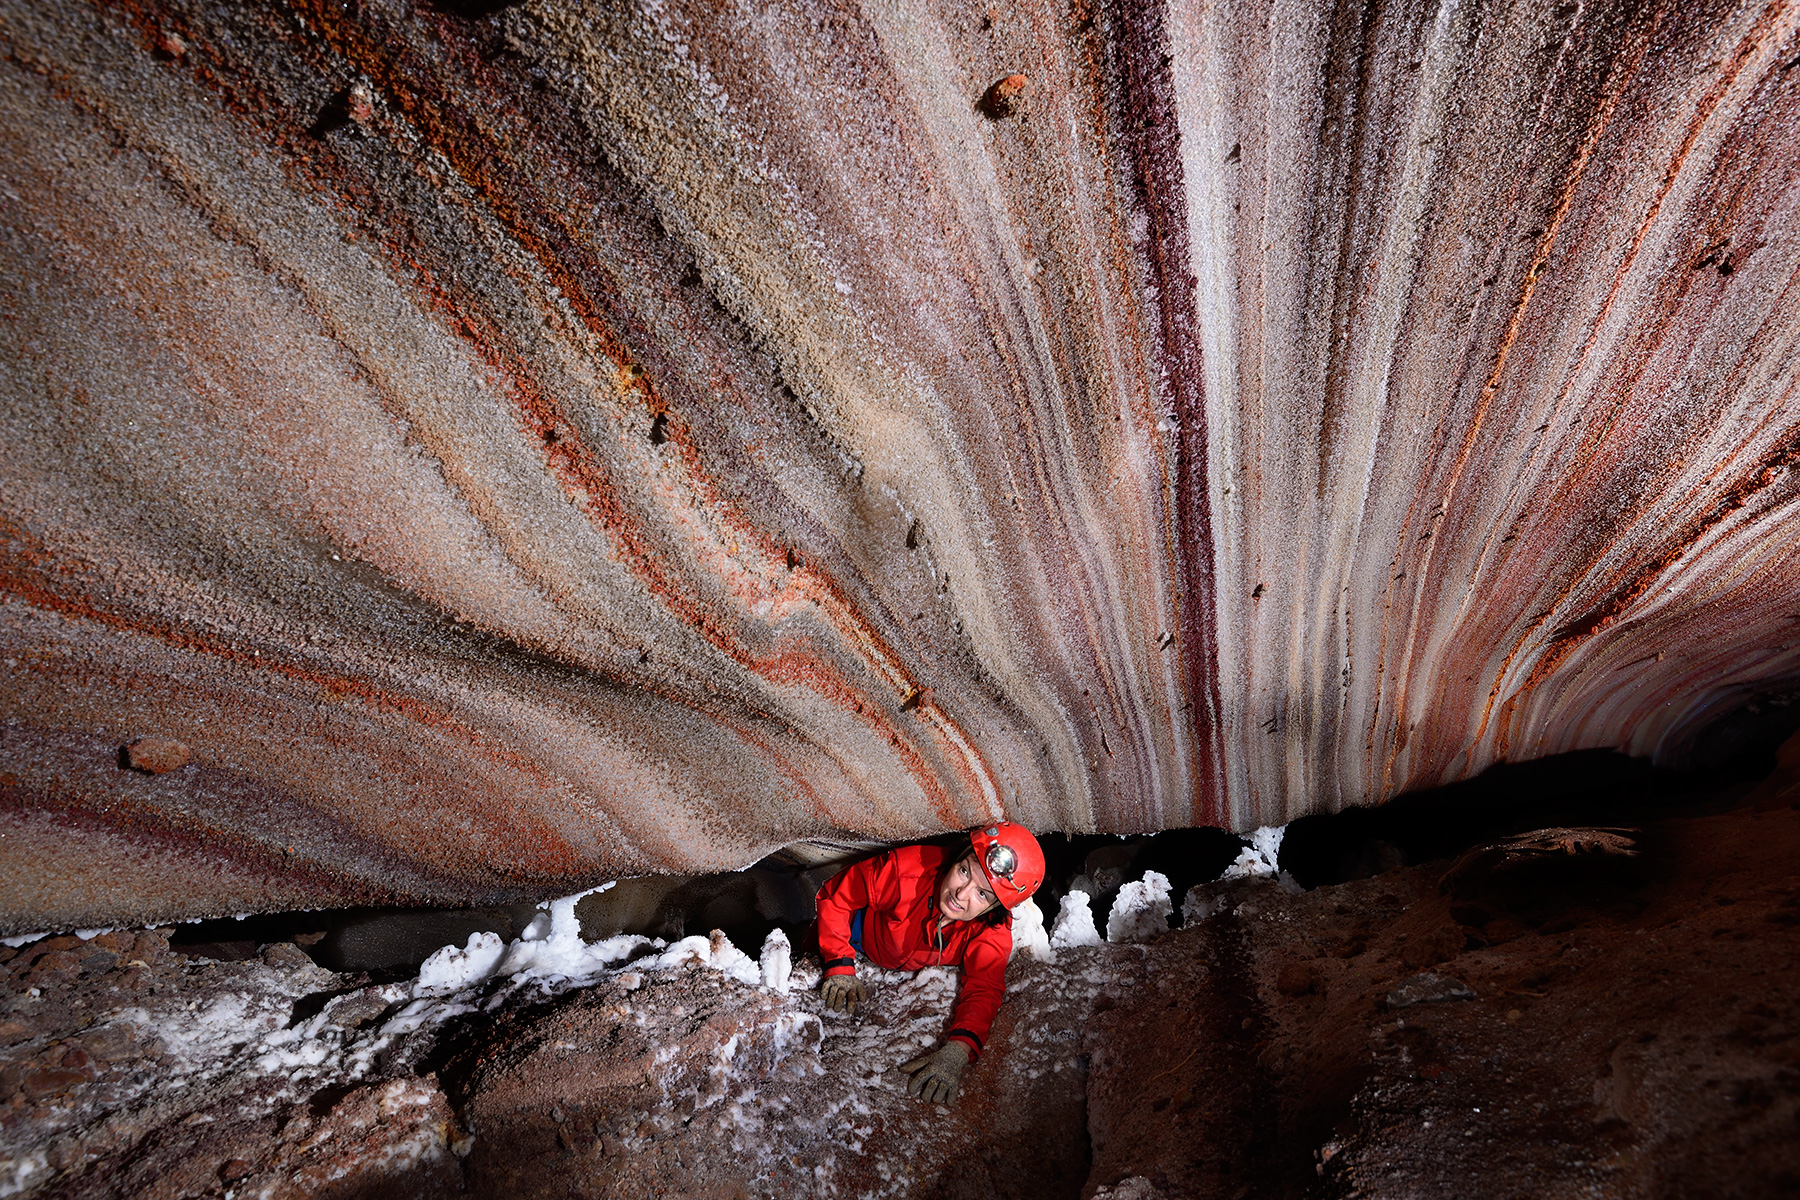 3N Cave (Iran, île de Qeshm, diapir de sel de Namakdan) - Entrée supérieure : spéléo passant une étroiture avec des couches de sel colorées au plafond (blanc, rose, orangé, rouge)